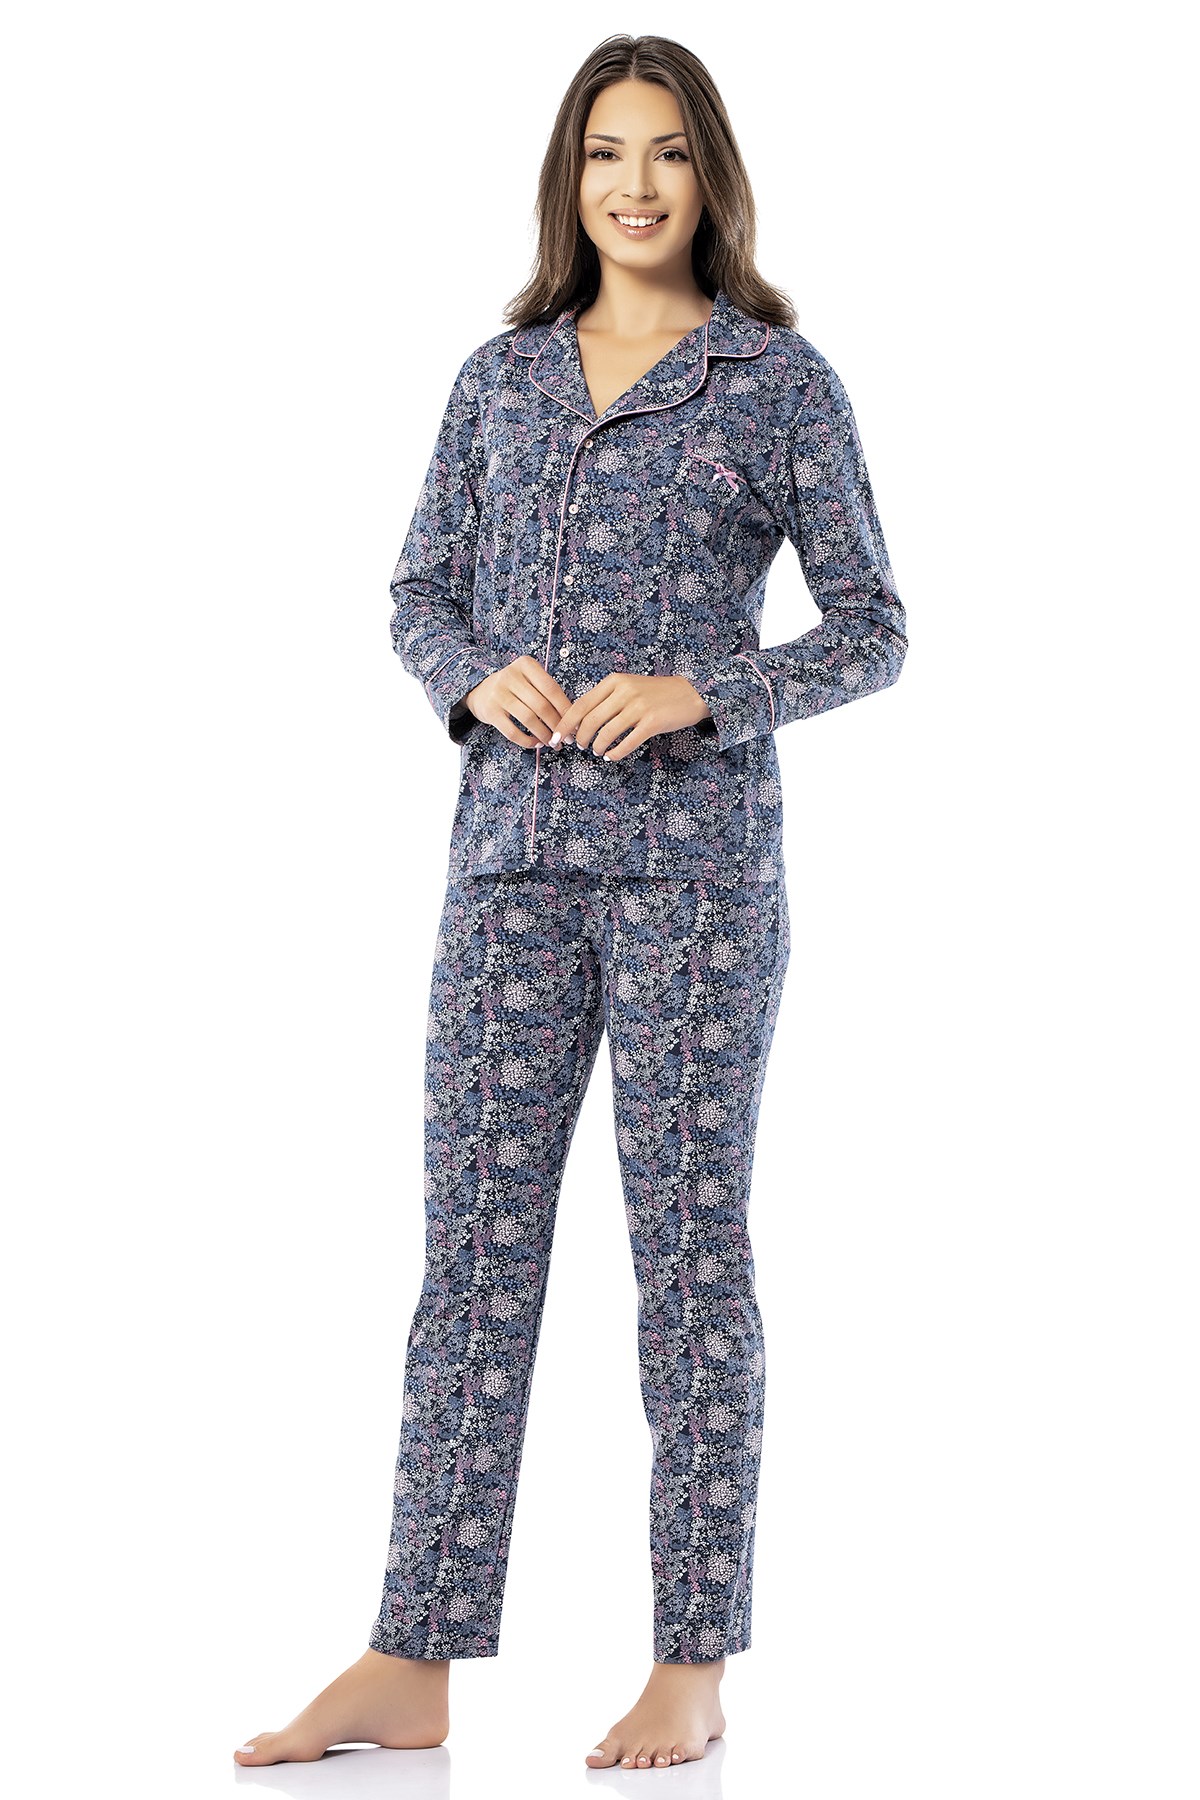 Erdem Women's Hooded Winter Pyjama Set